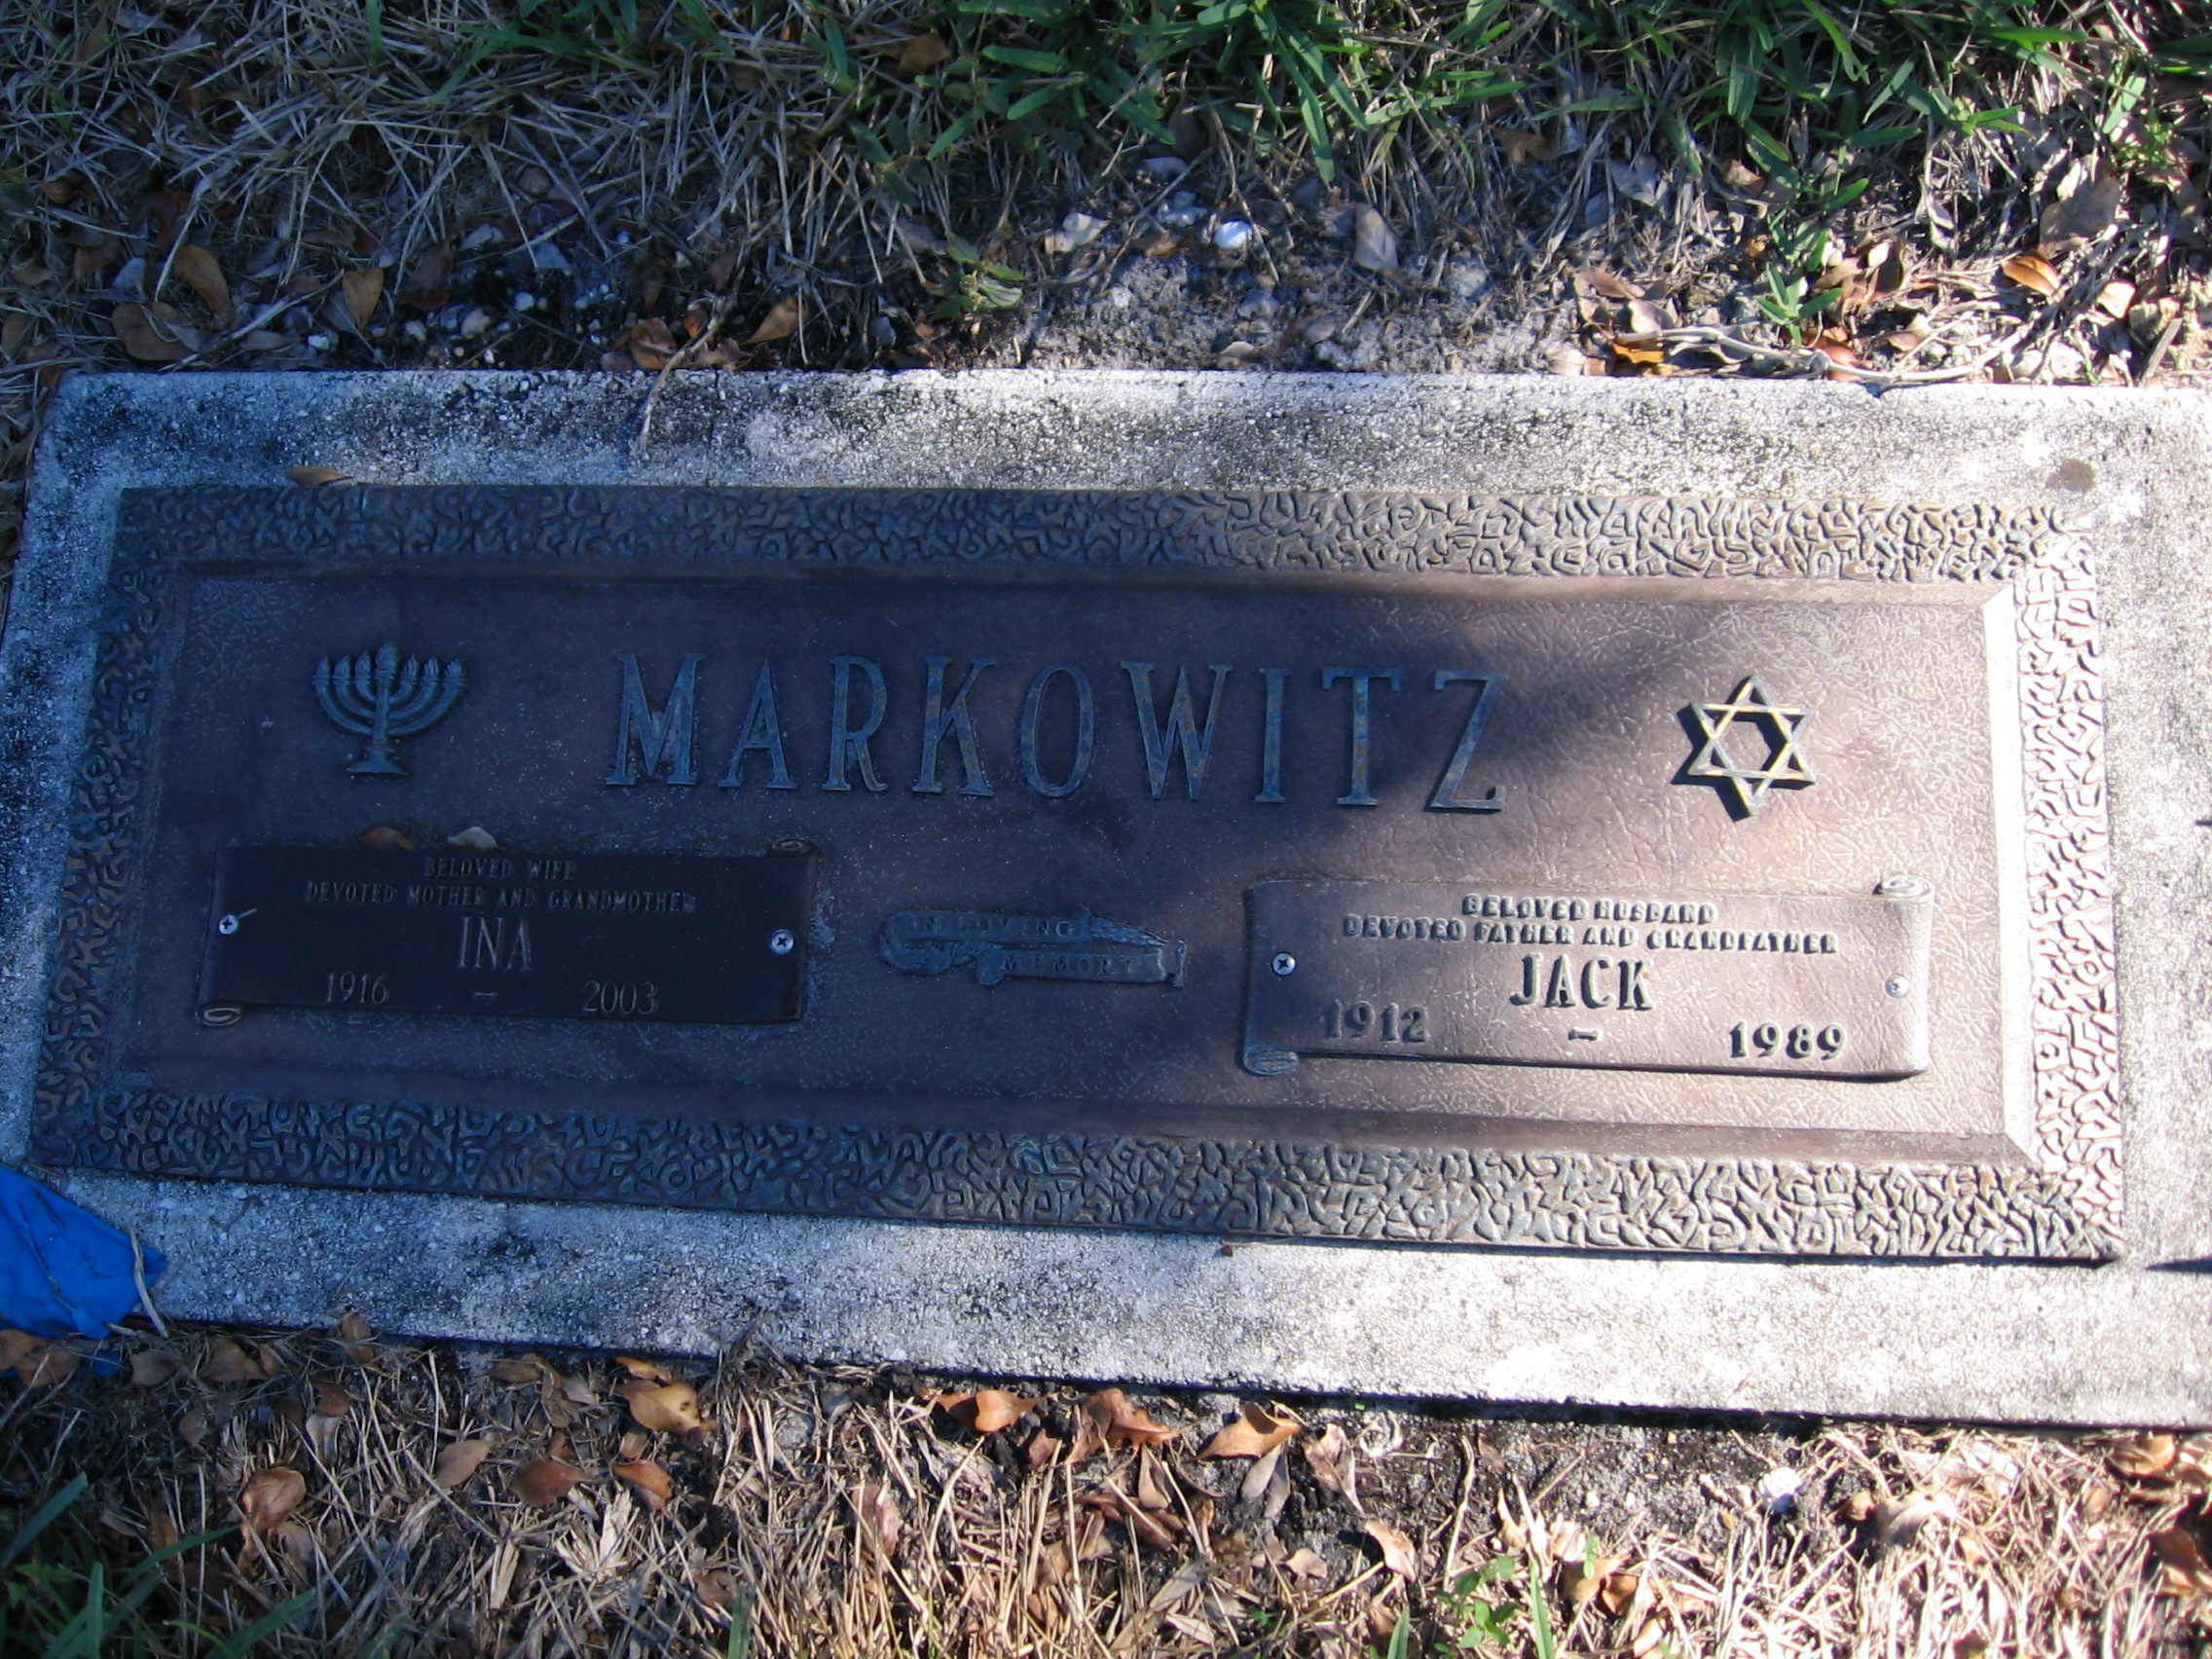 Jack Markowitz